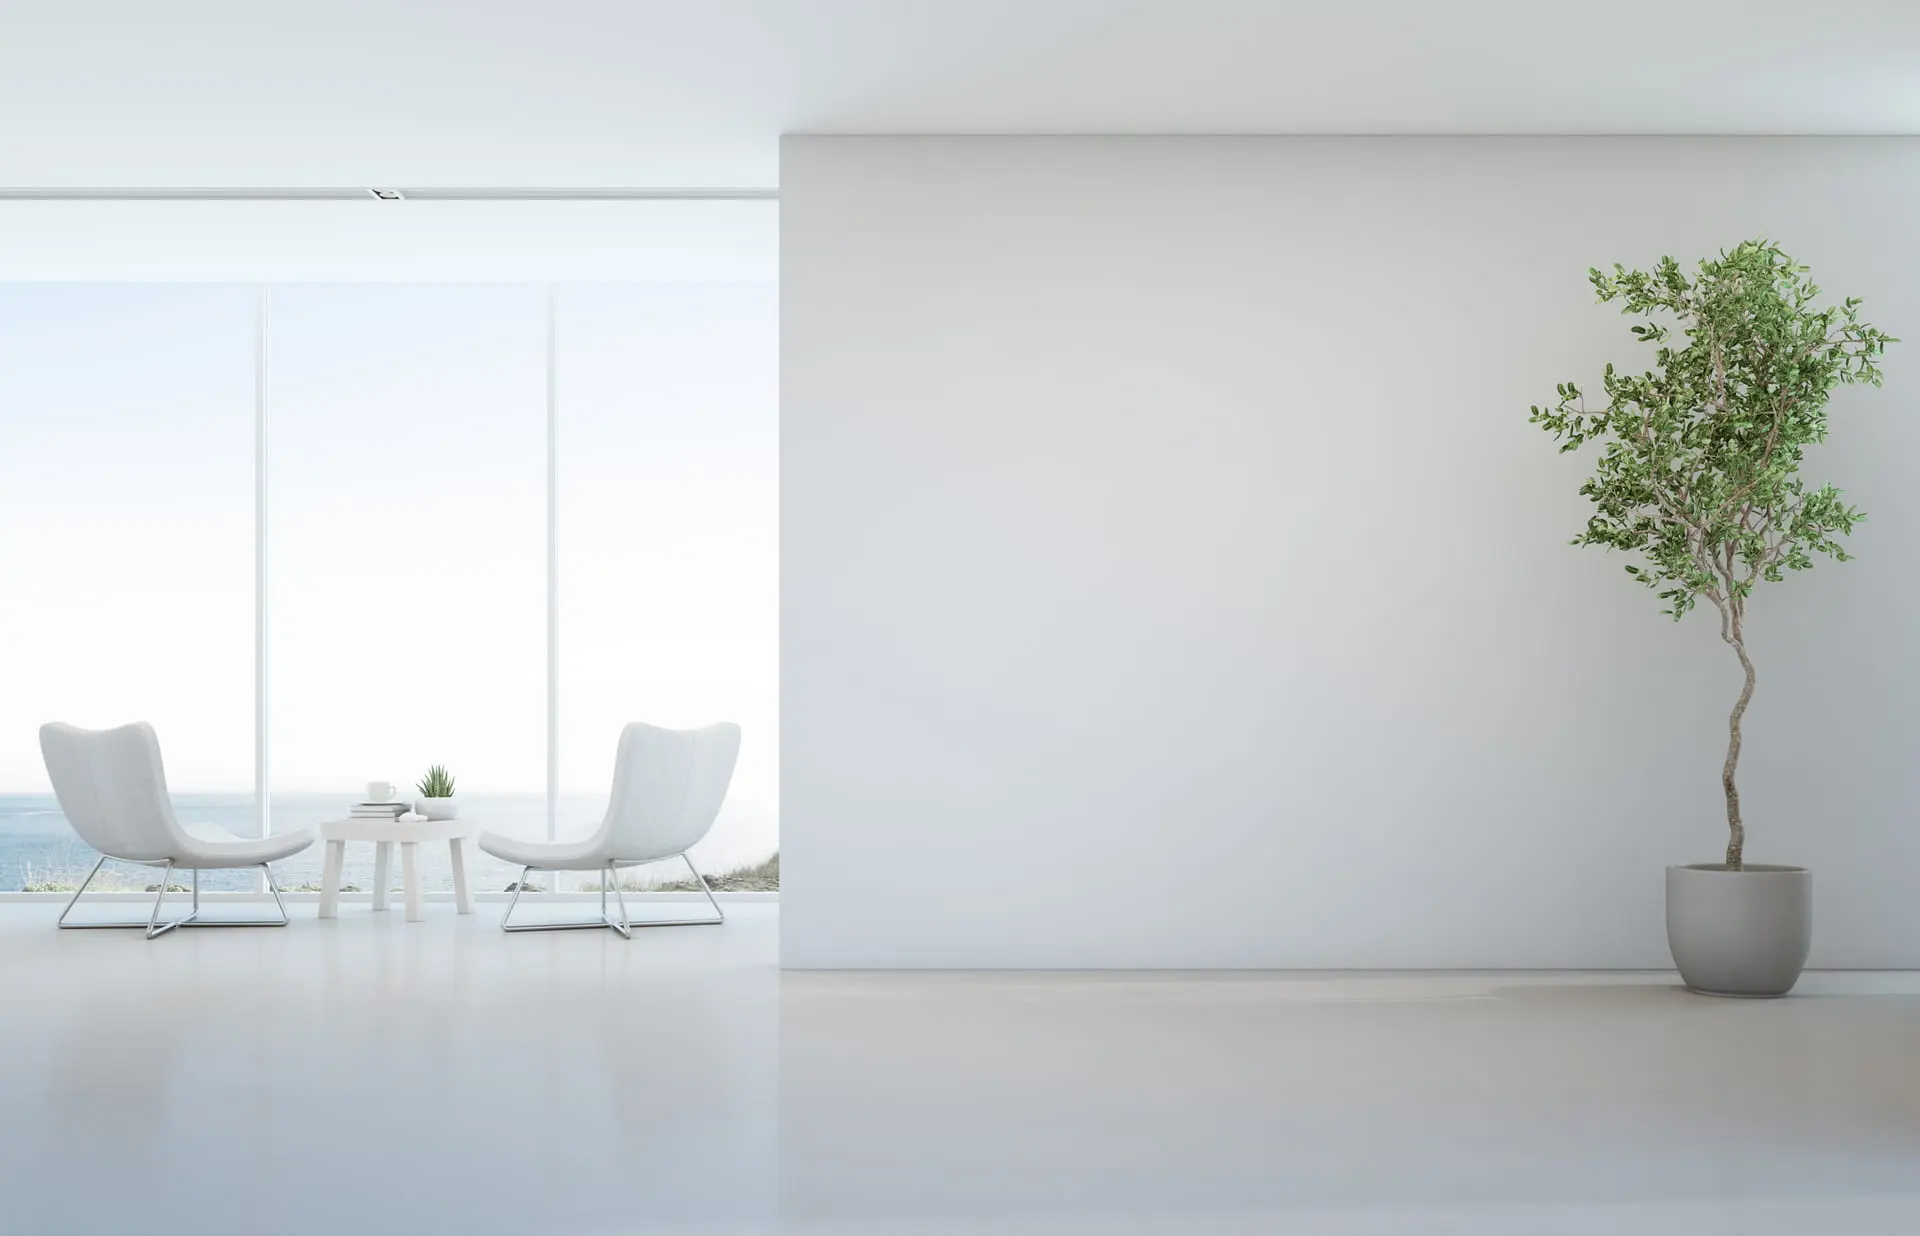 Ruang tamu bergaya minimalis dalam warna-warna terang